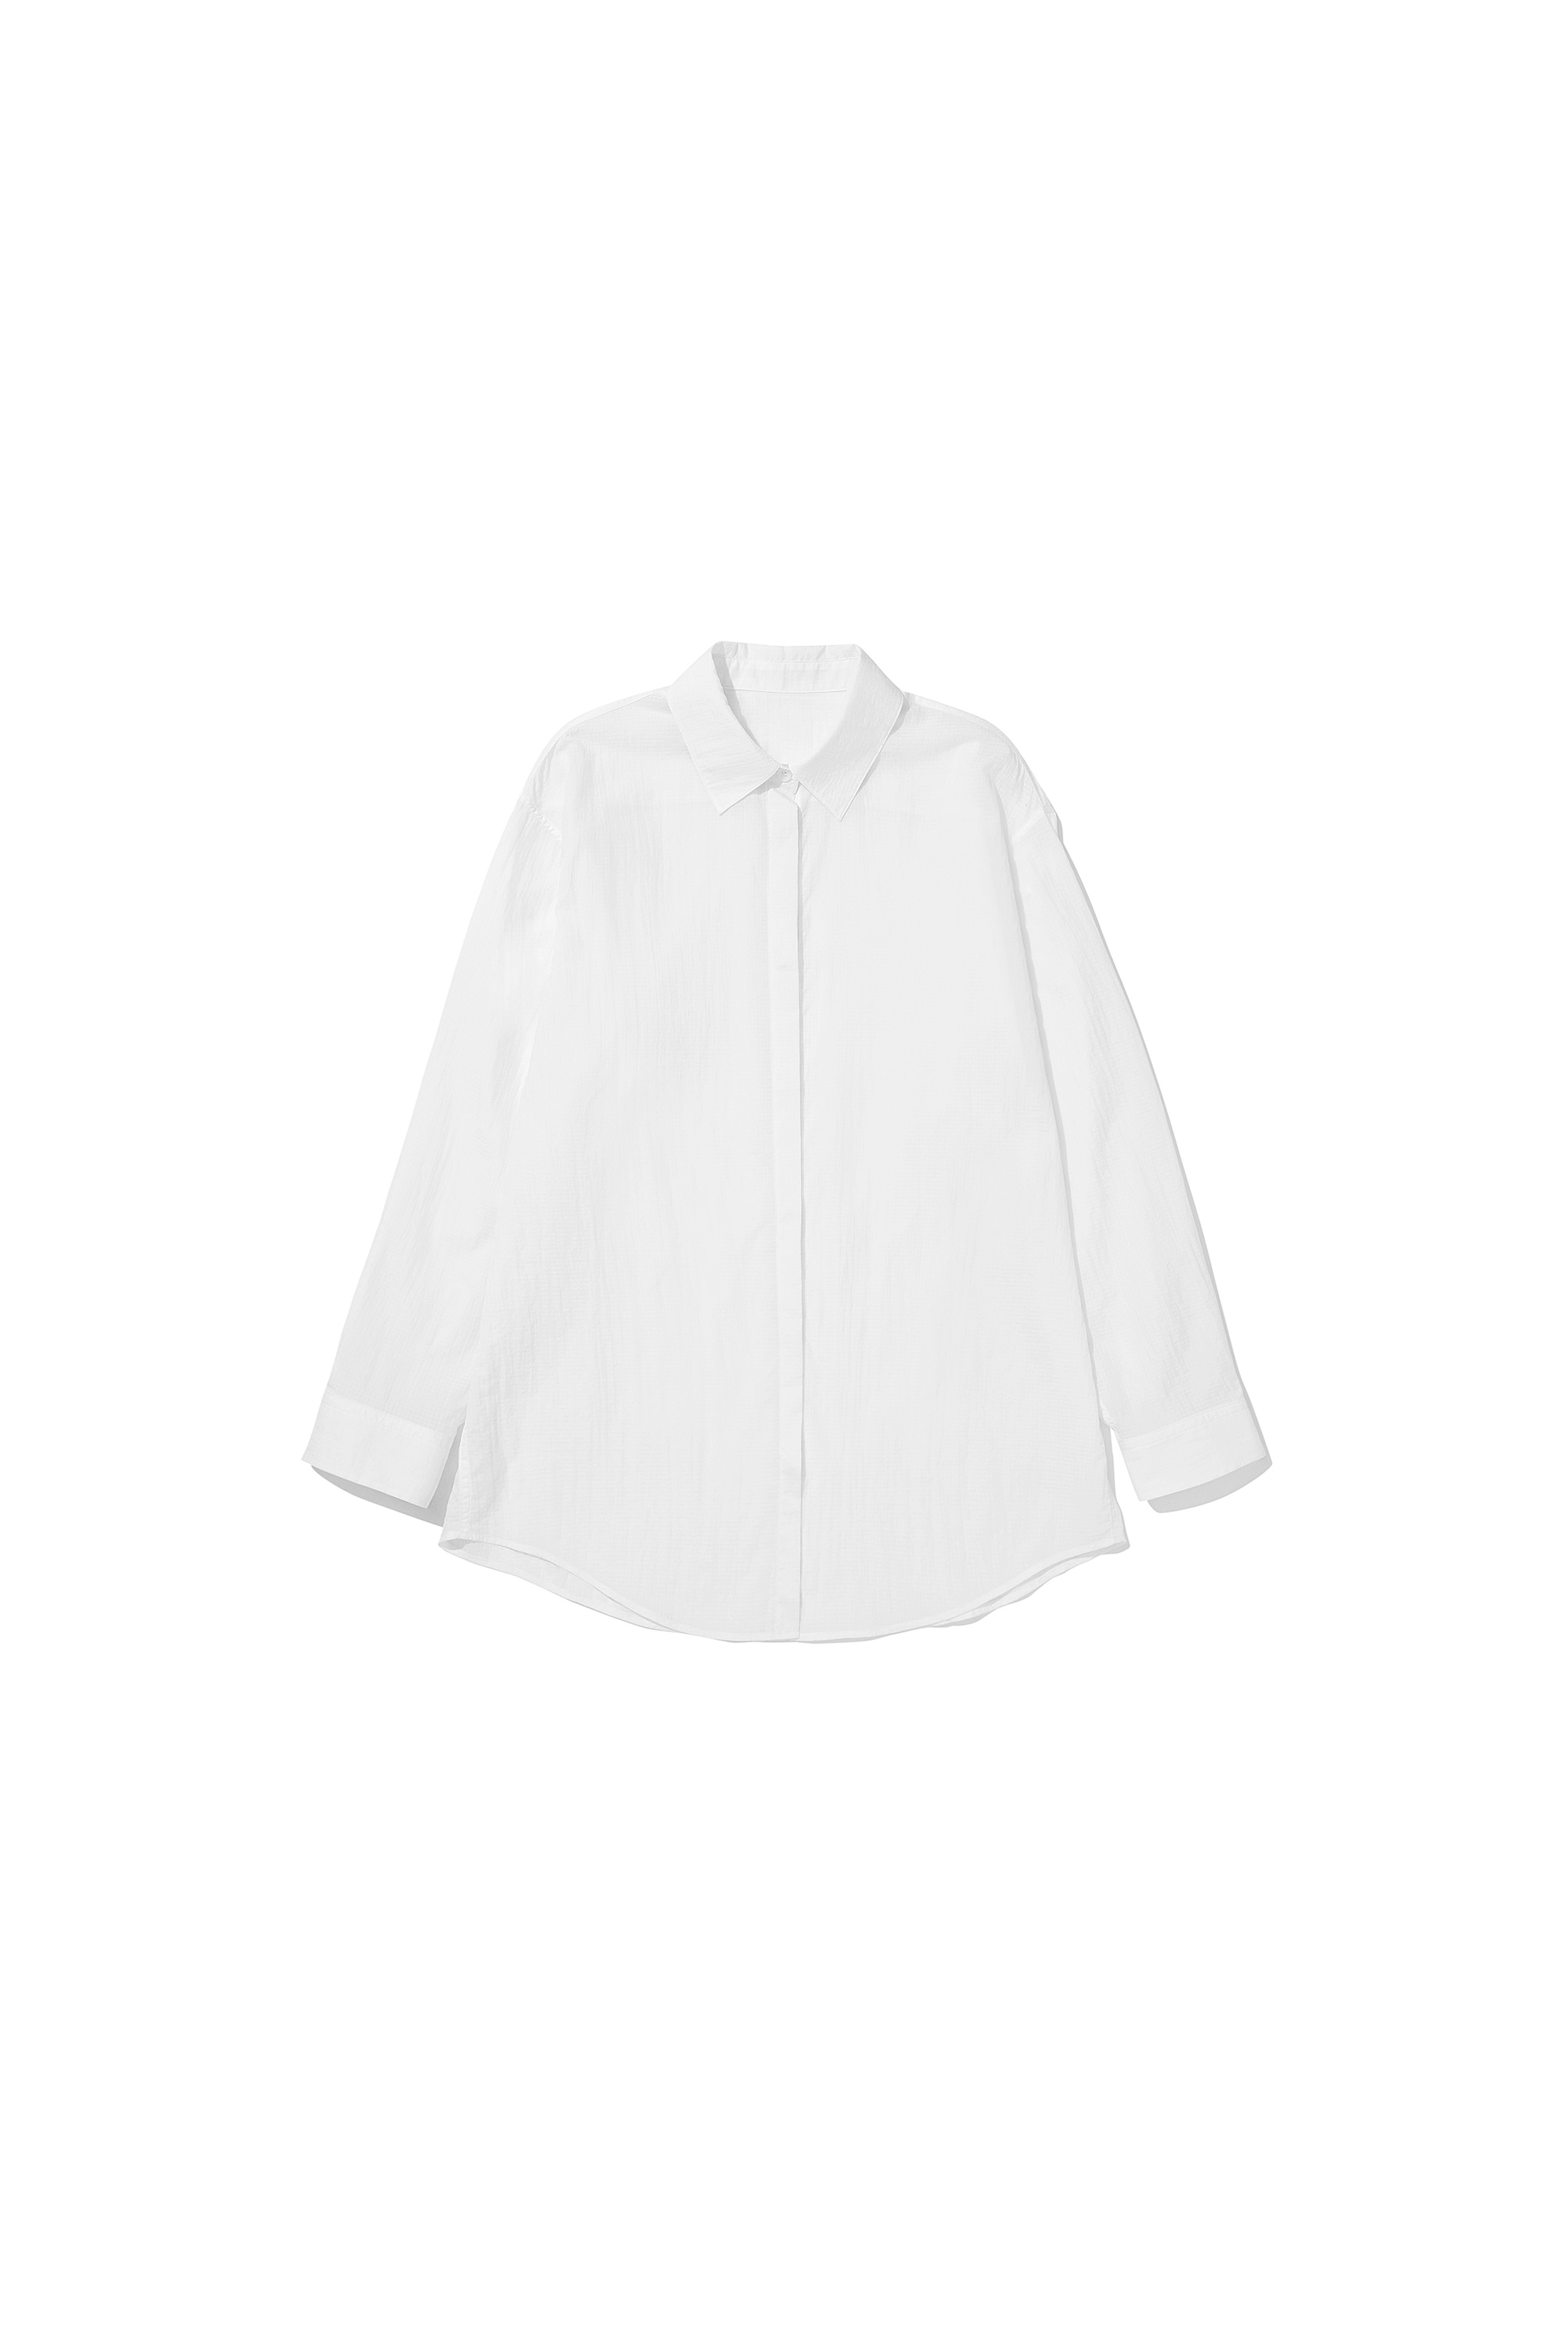 Nylon Overfit Shirts White [04.25(THU) 20:00 OPEN]